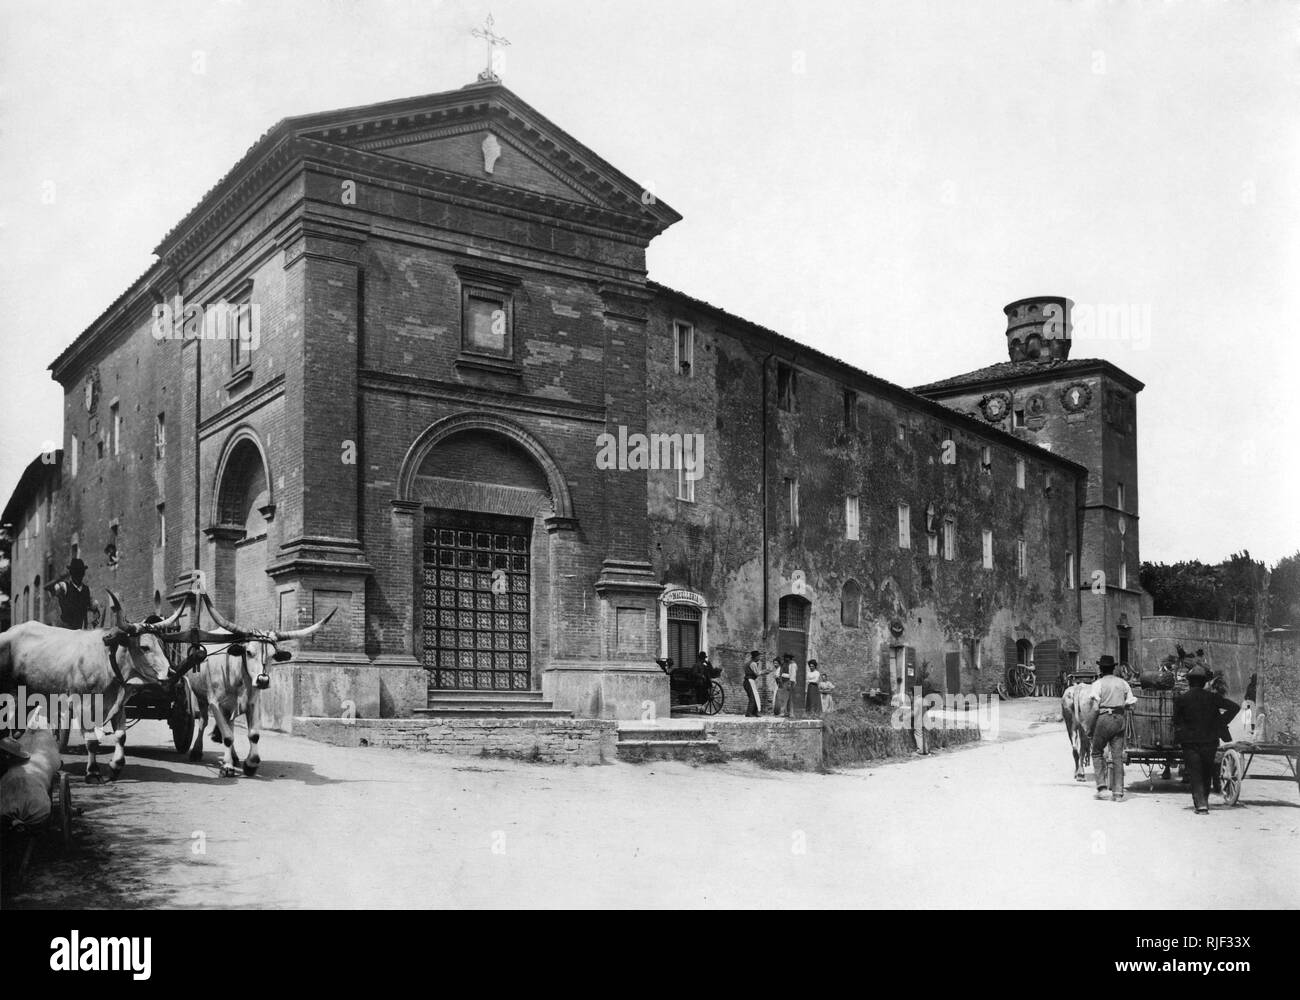 Palazzo dei diavoli, siena, tuscany, italy 1900-10 Stock Photo